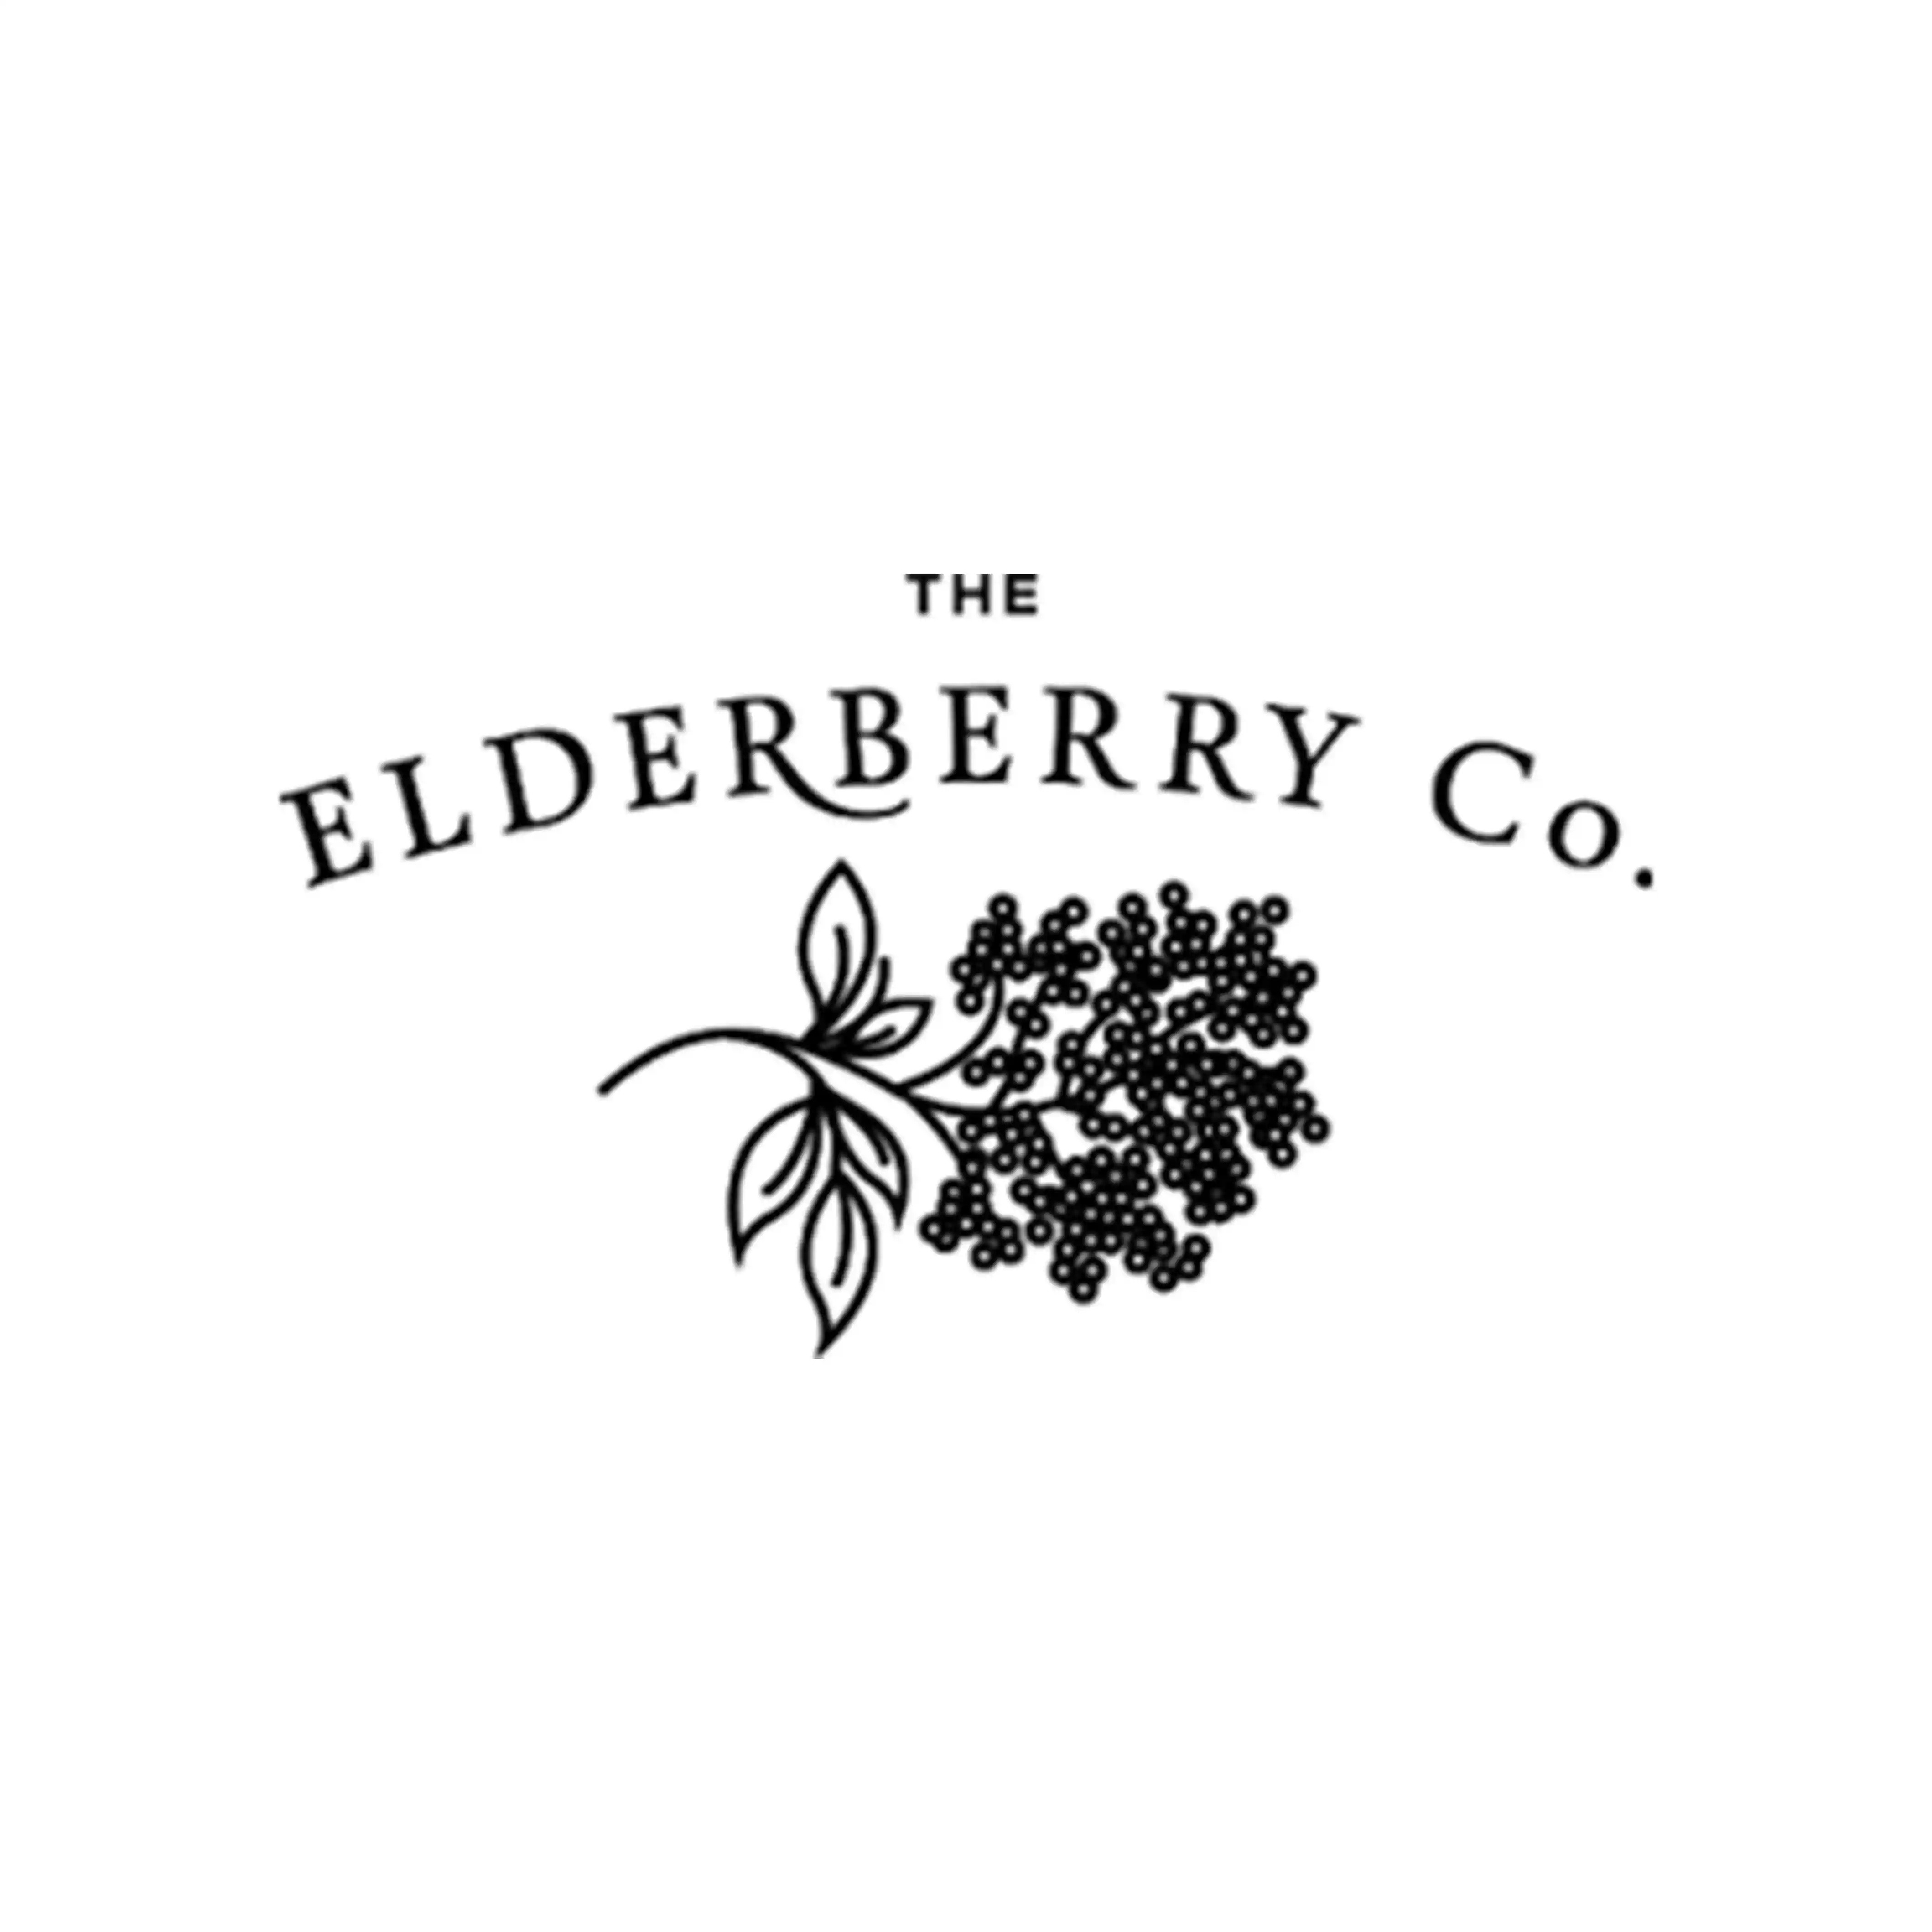 The ElderberryCo